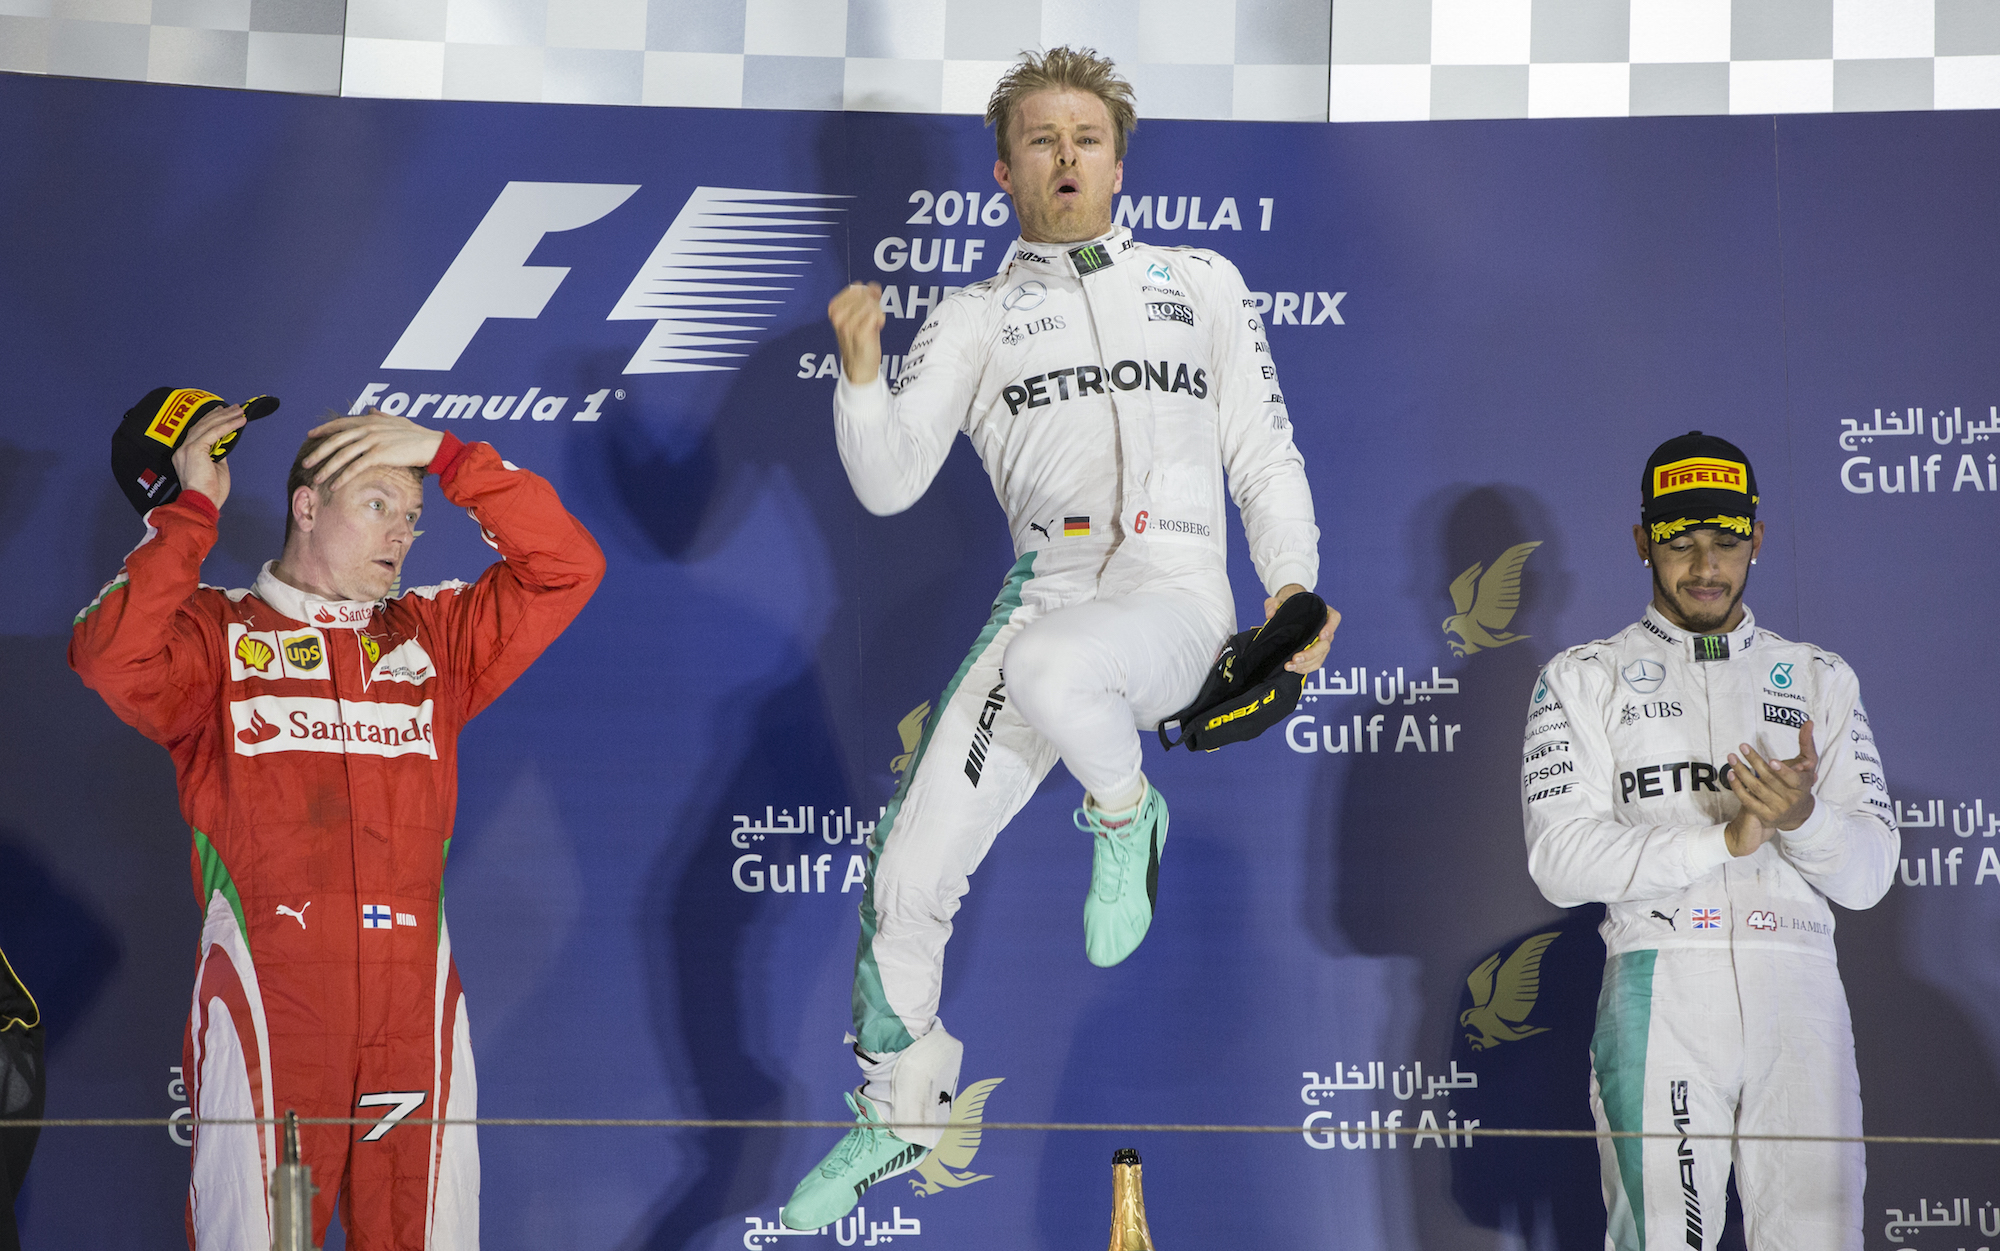 PODIUM. Nico Rosberg menjadi juara di GP Bahrain. Di posisi kedua ada Kimi Raikkonen, sedangkan posisi ketiga diperoleh Lewis Hamilton. Foto oleh Valdrin Xhemaj/EPA 